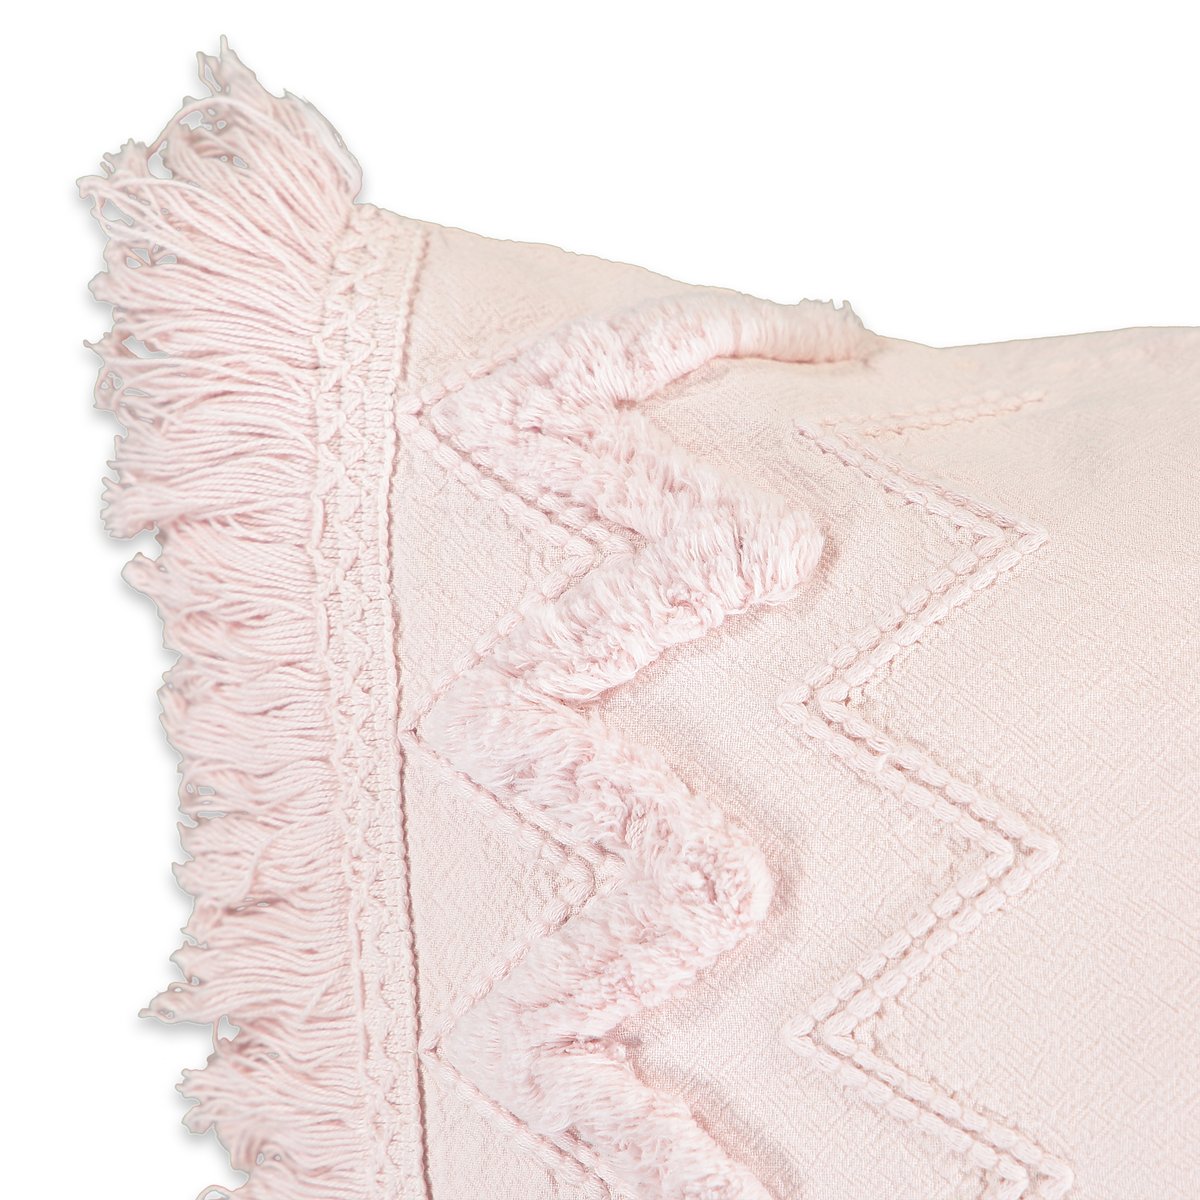 Чехол LaRedoute На подушку из биохлопка Melbourne 60 x 40 см розовый, размер 60 x 40 см - фото 2